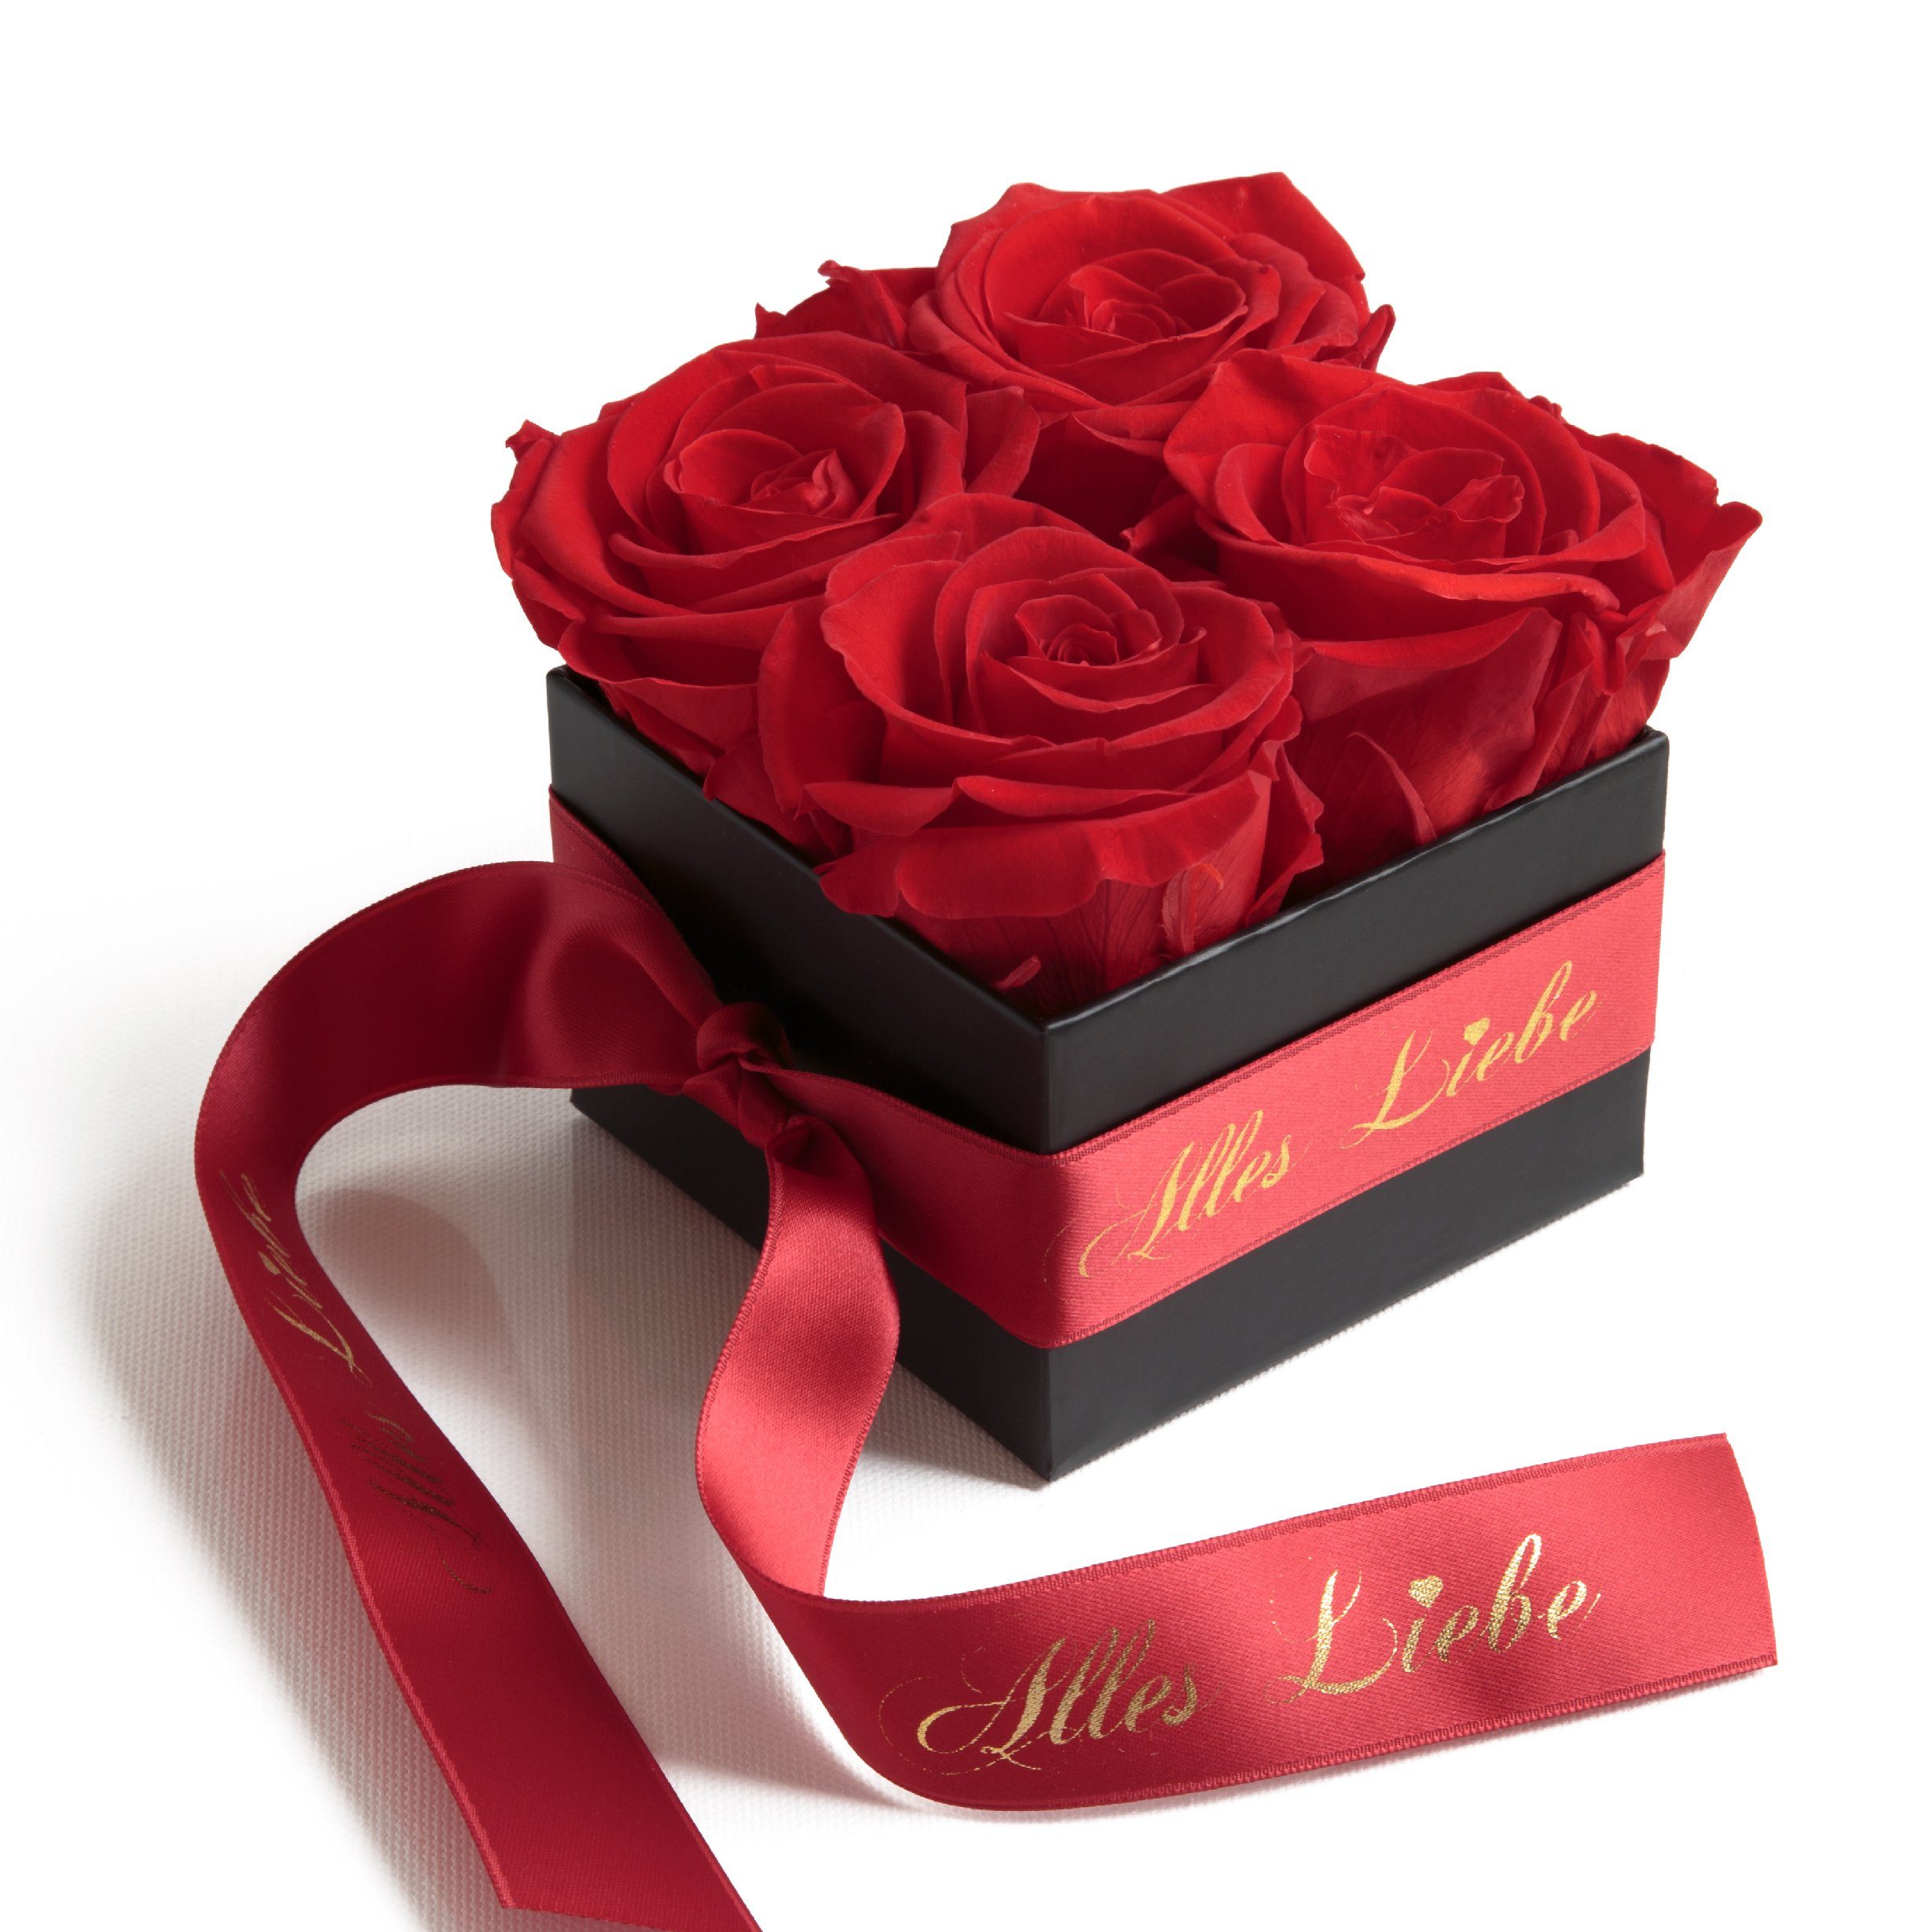 Kunstblumenstrauß Alles Liebe Blumen Infinity 8,5 Rot Rose, Rosen Geschenk cm, konservierte Höhe ROSEMARIE Muttertag echte Heidelberg, Rosenbox SCHULZ